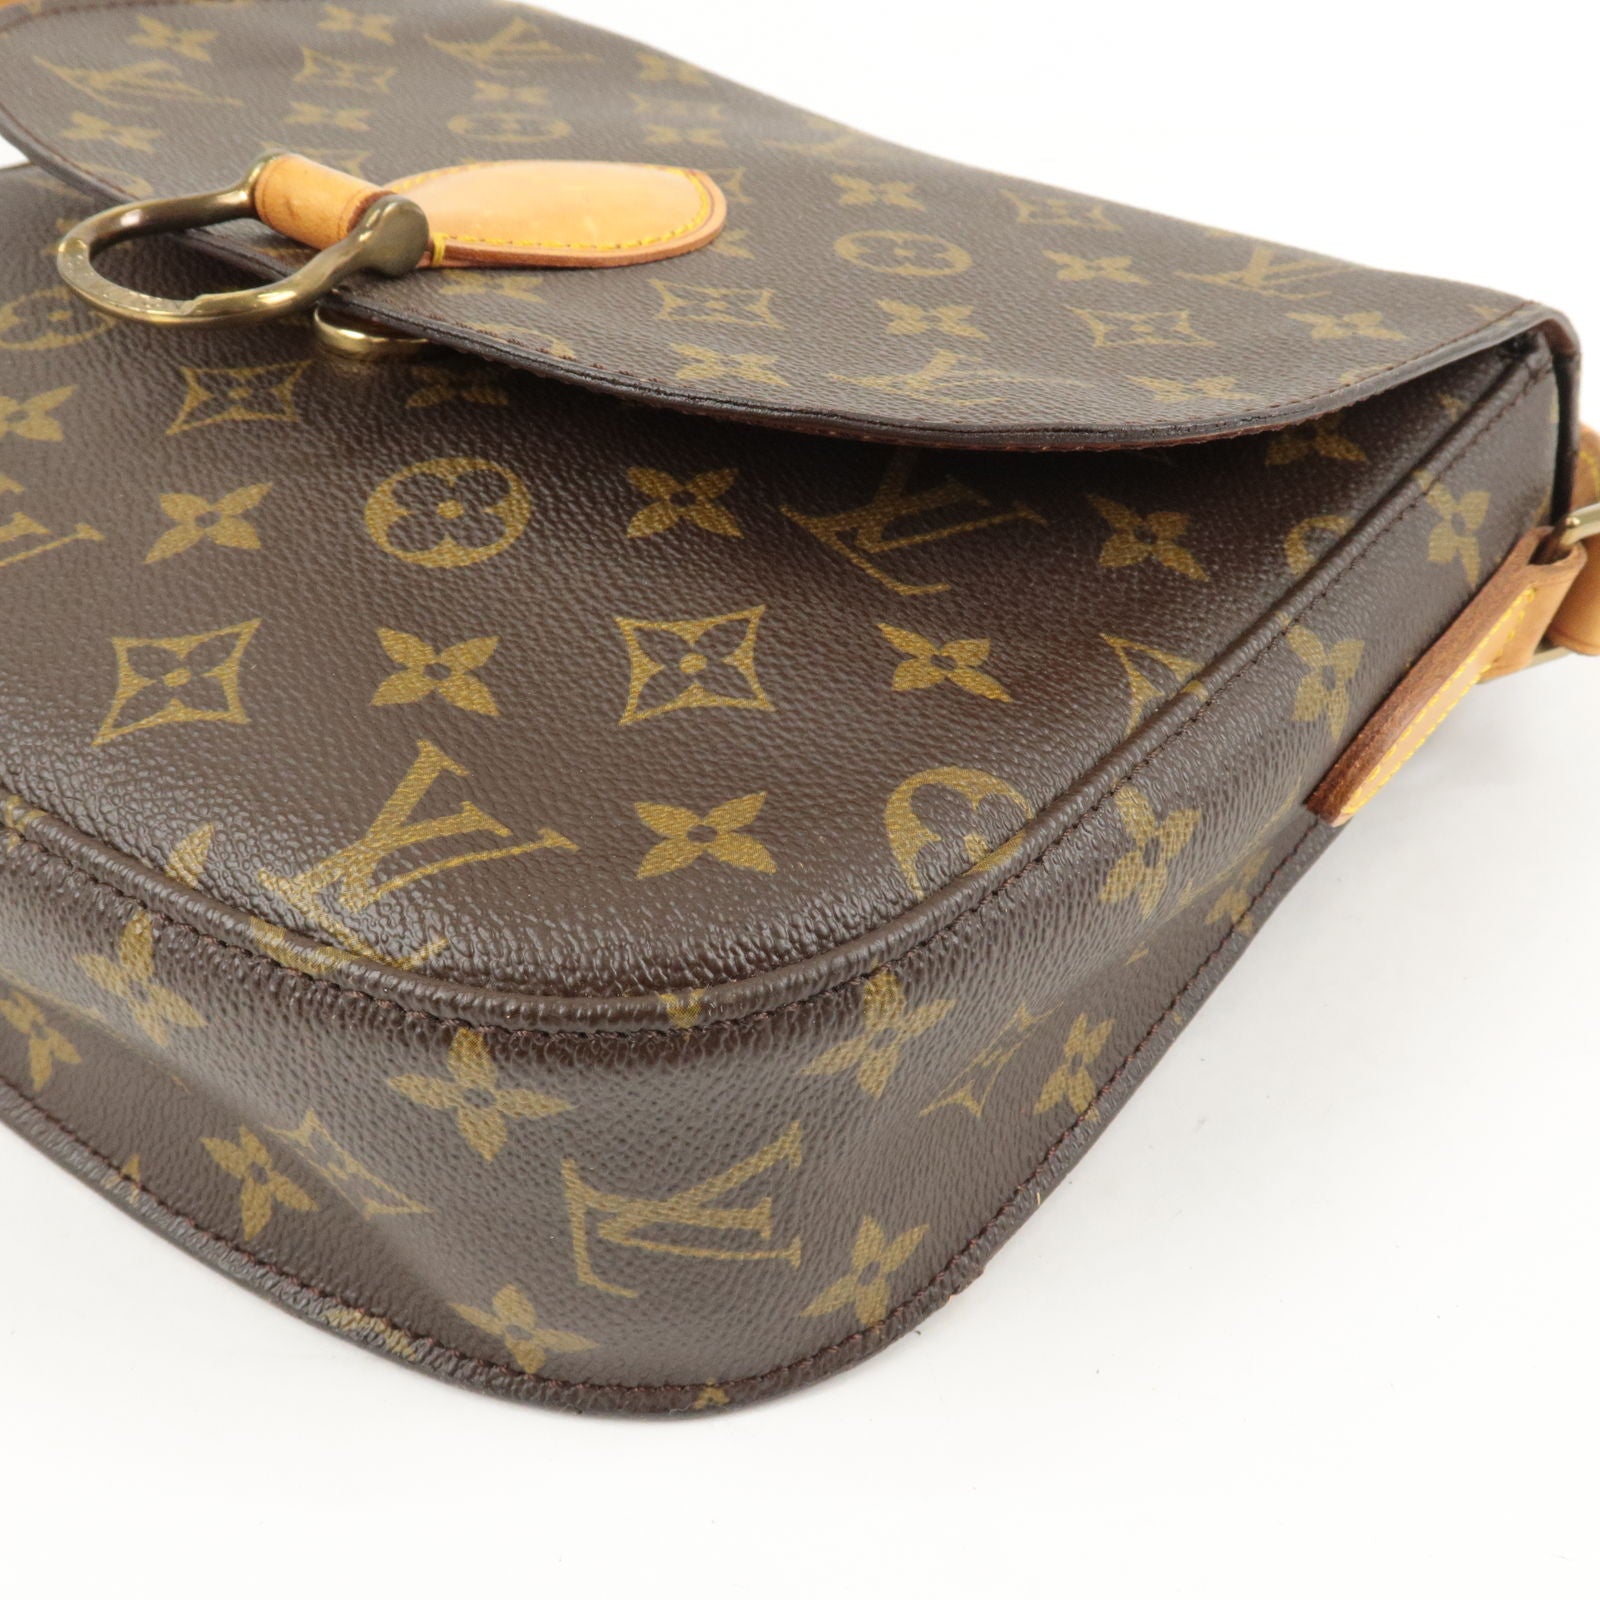 Louis Vuitton, Bags, Authentic Louis Vuitton Crossbody Bag Saint Cloud Gm  Monogram Used Lv Handbag